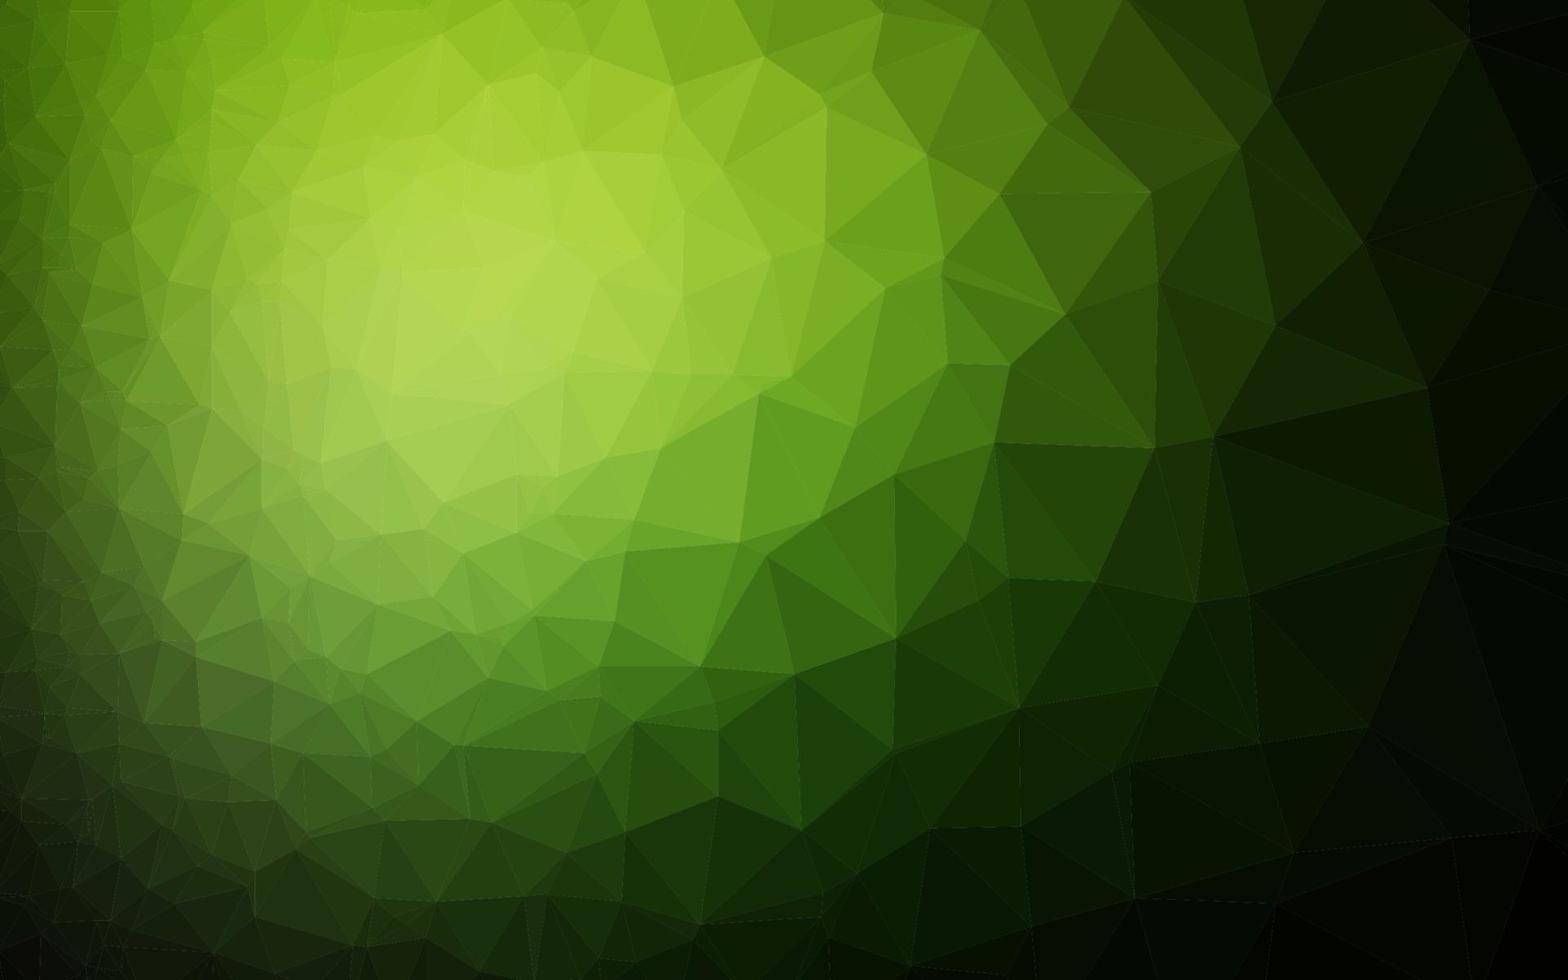 sfondo poligonale vettoriale verde scuro.